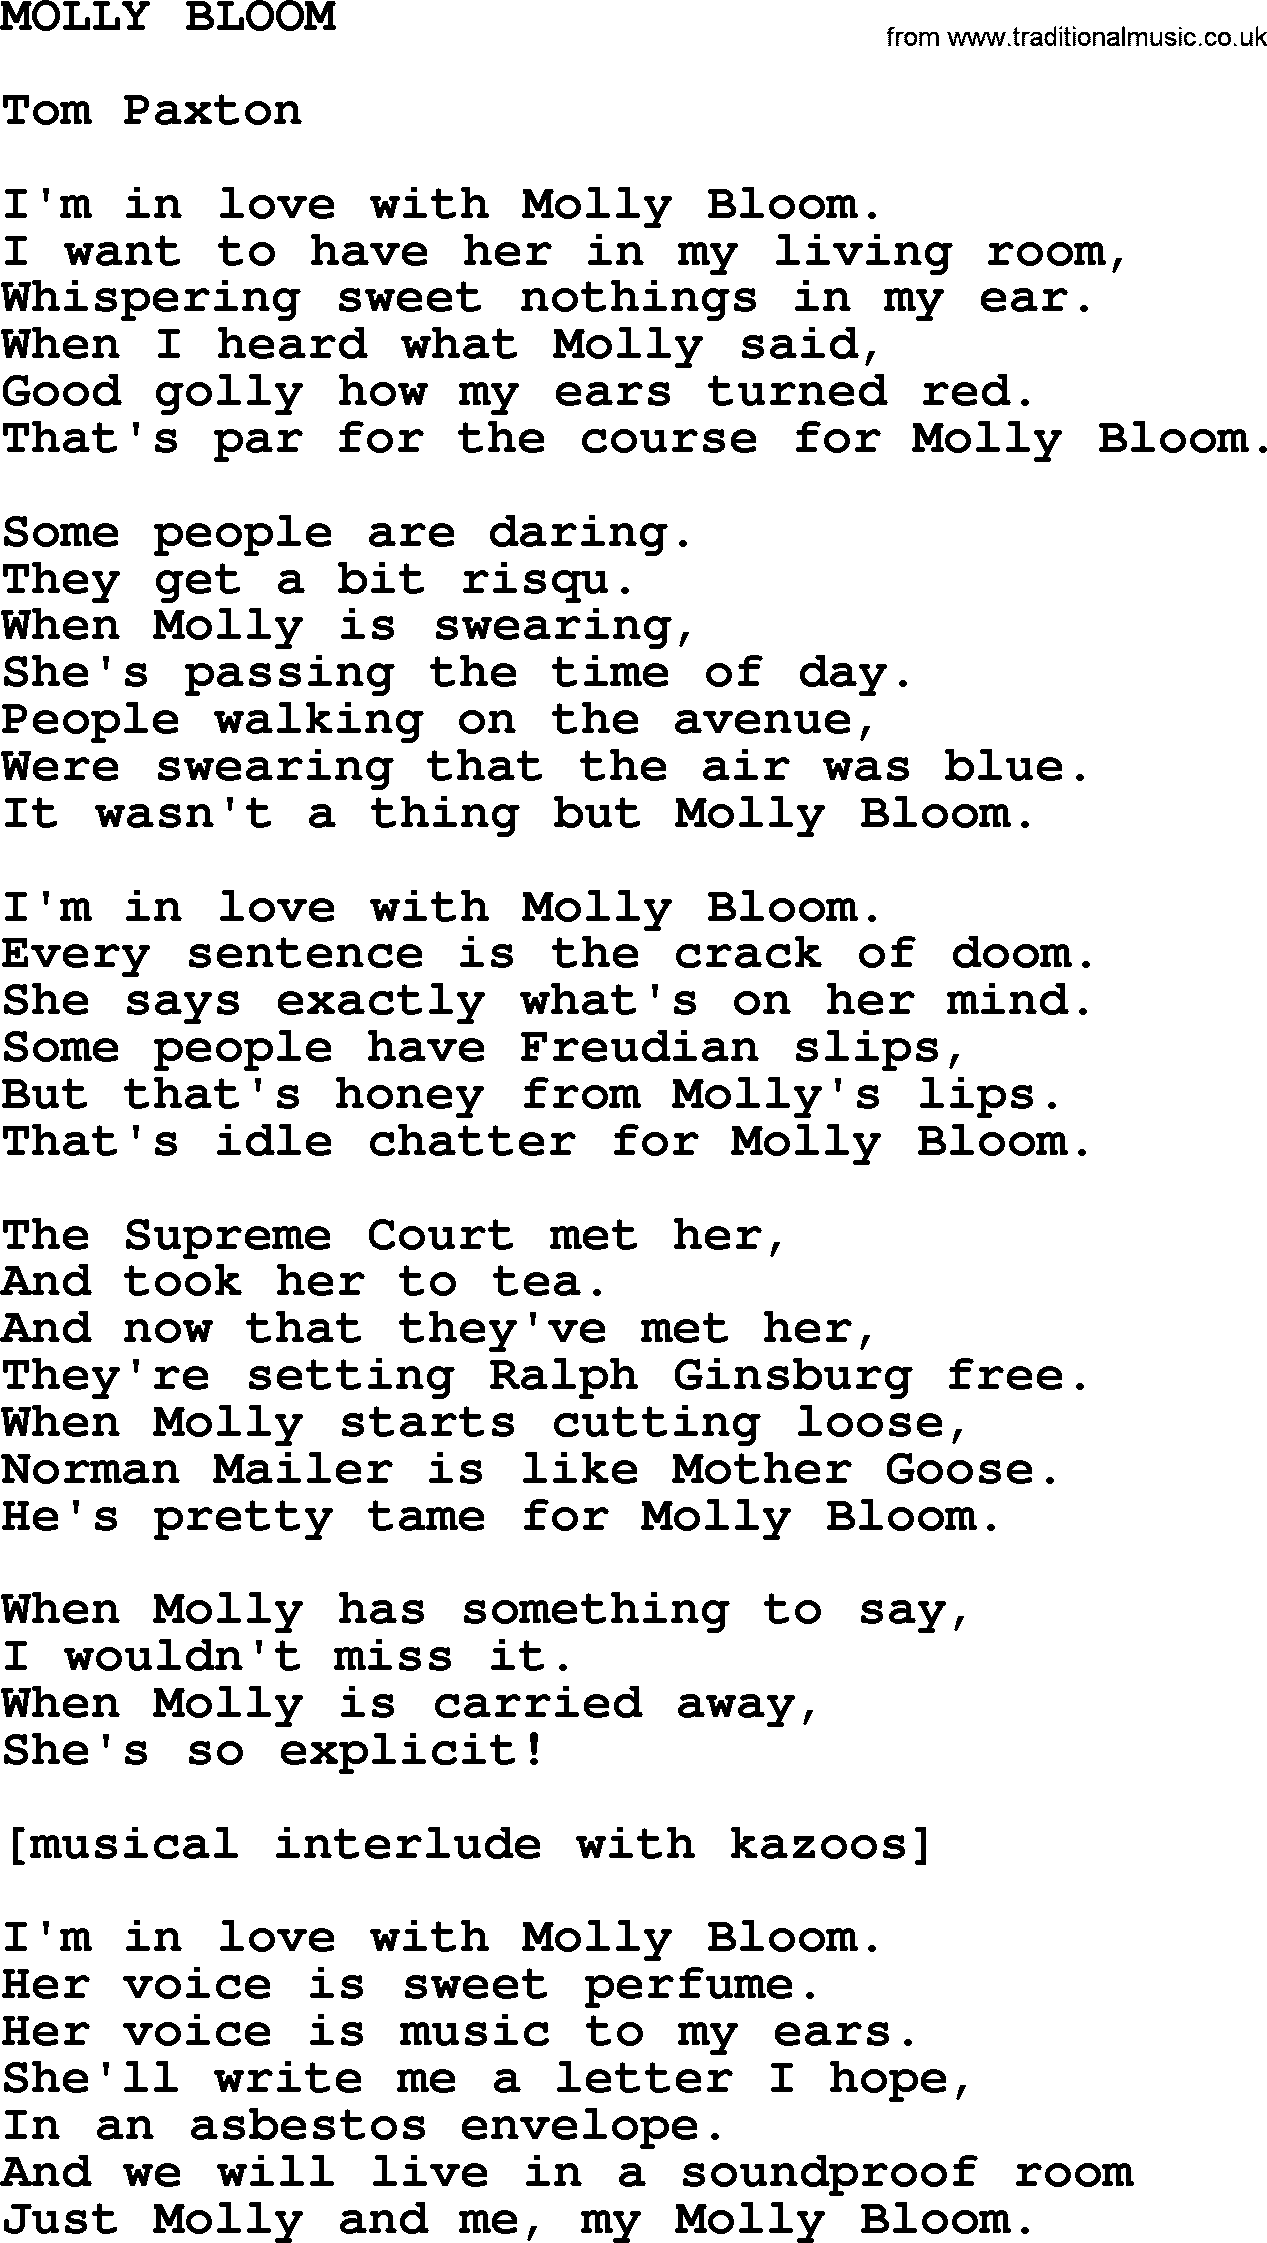 Tom Paxton song: Molly Bloom, lyrics